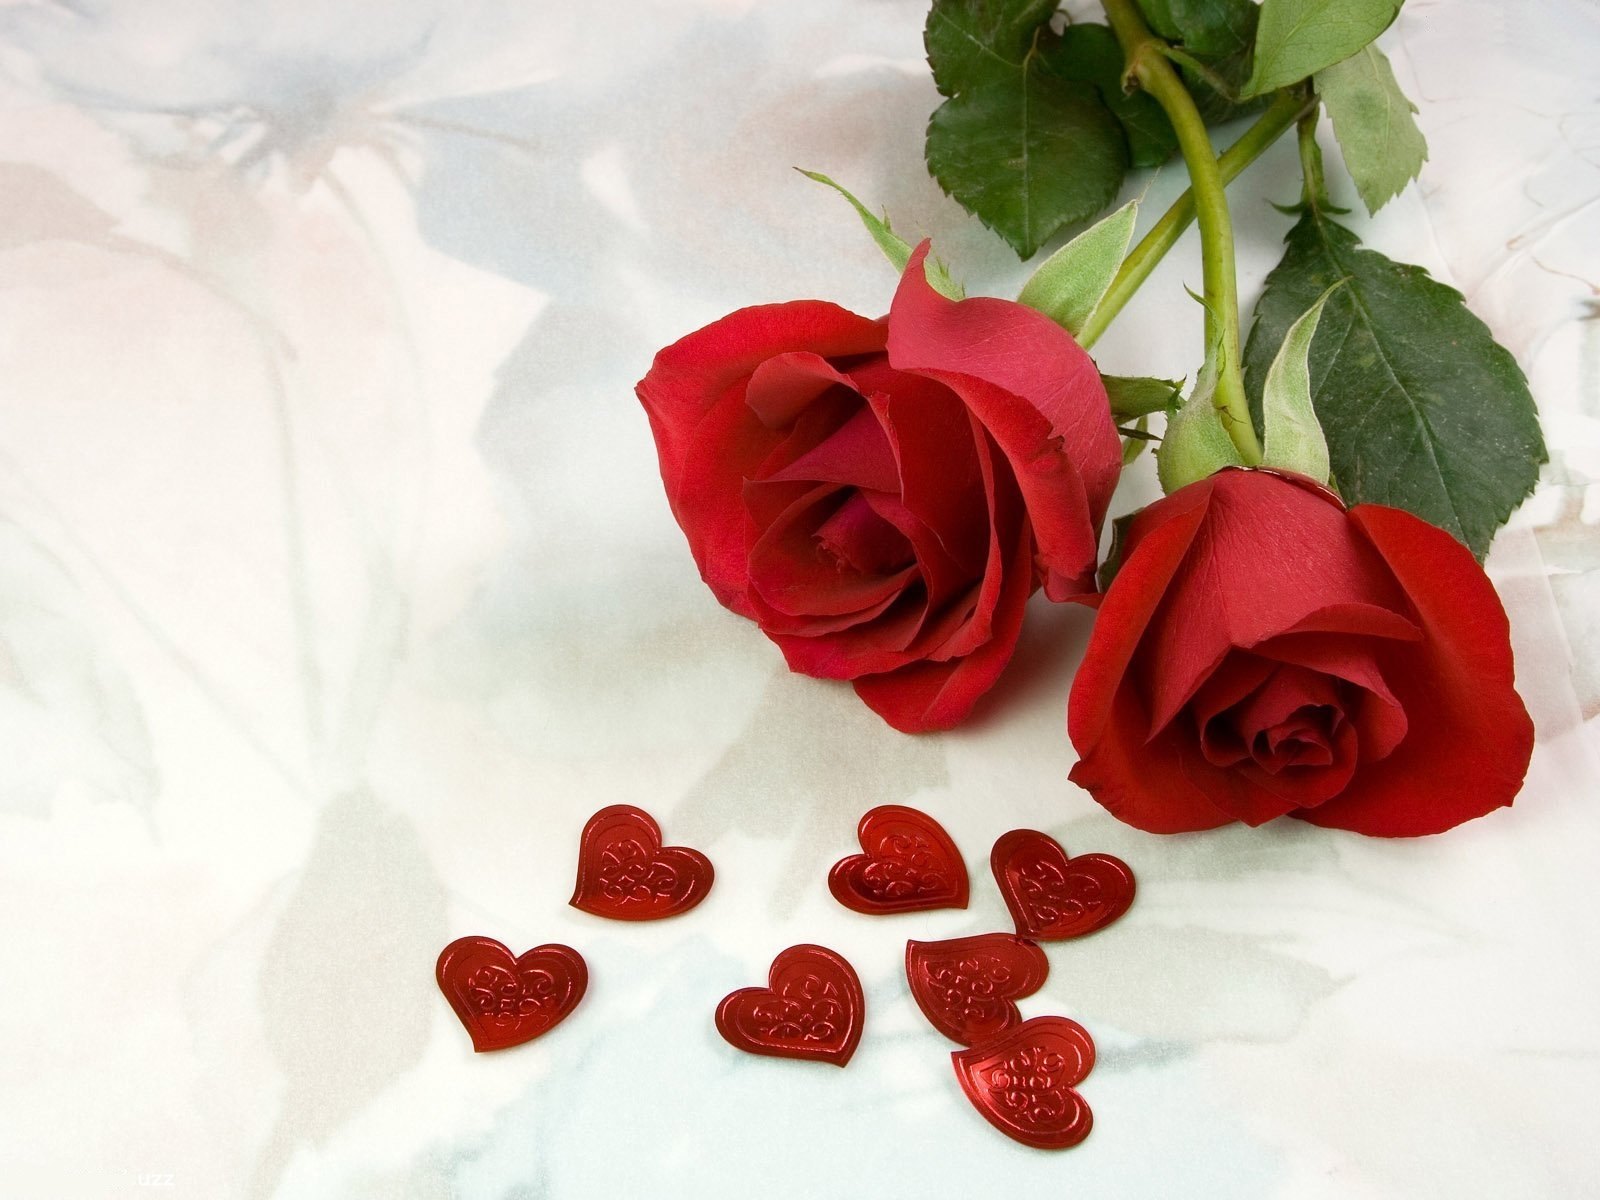 As 10 Melhores Fotos de Rosas Vermelhas do Flickr | Flores - Cultura Mix